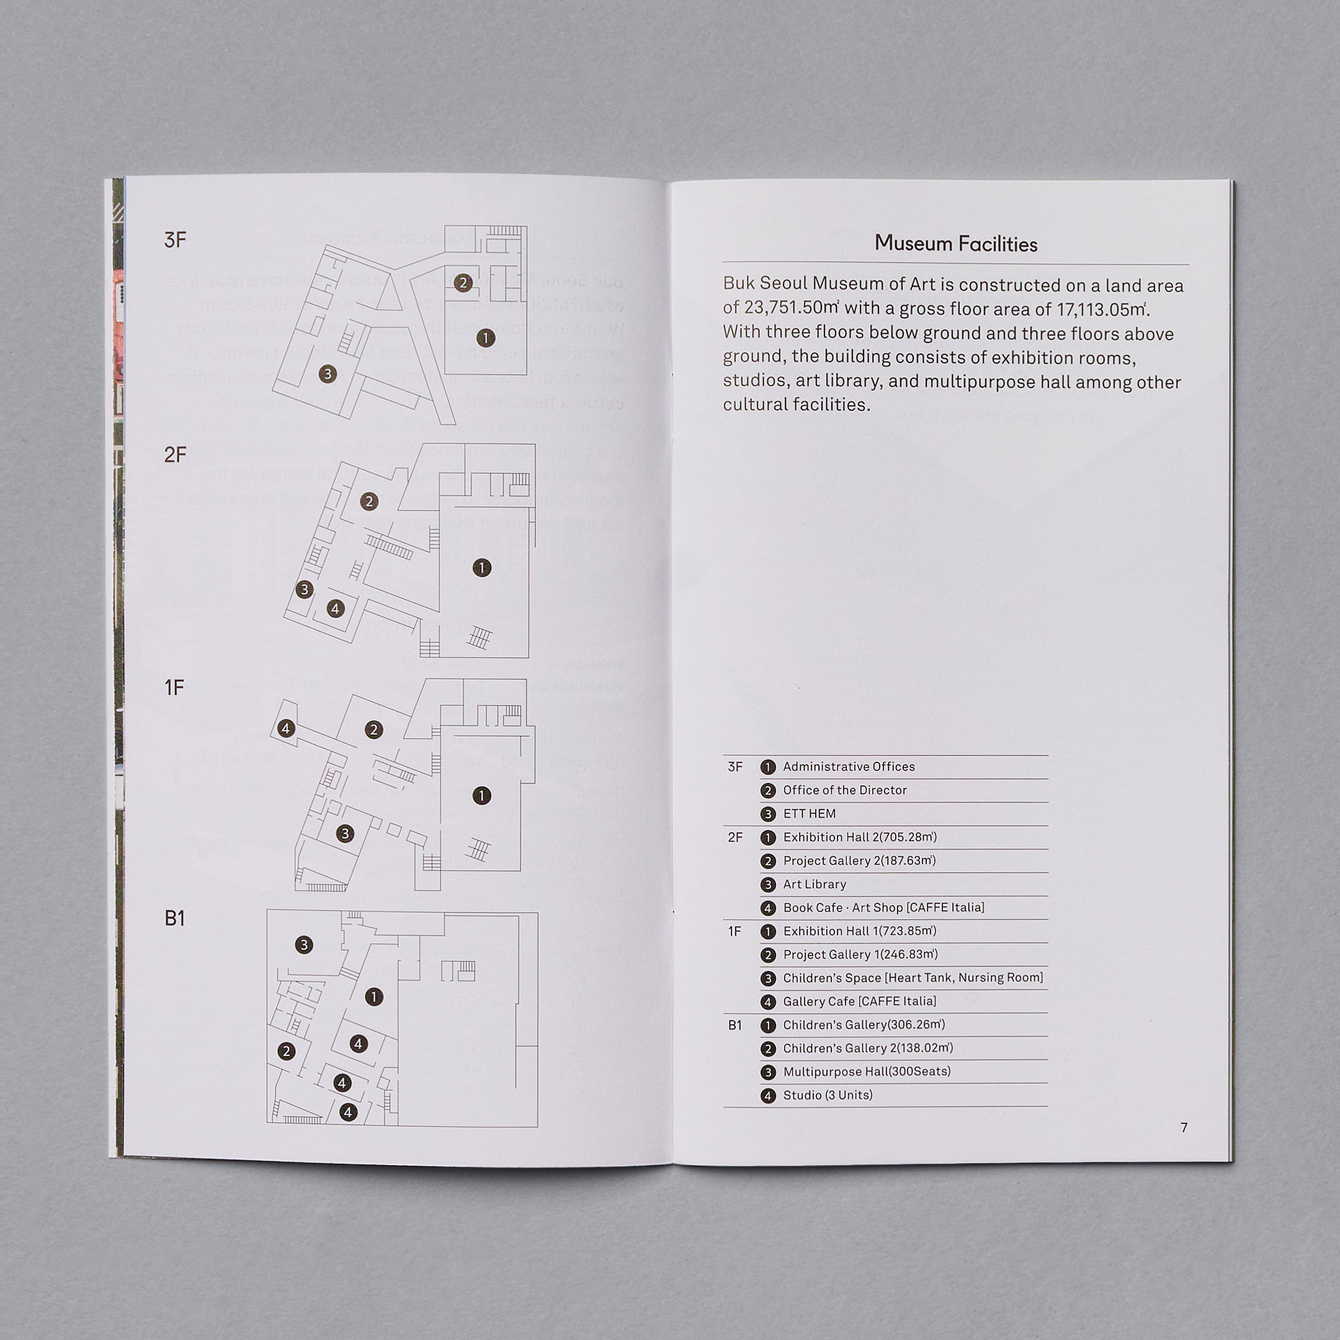 Brochure design for Buk Seoul Museum of Art's 2018 season designed by Studio fnt